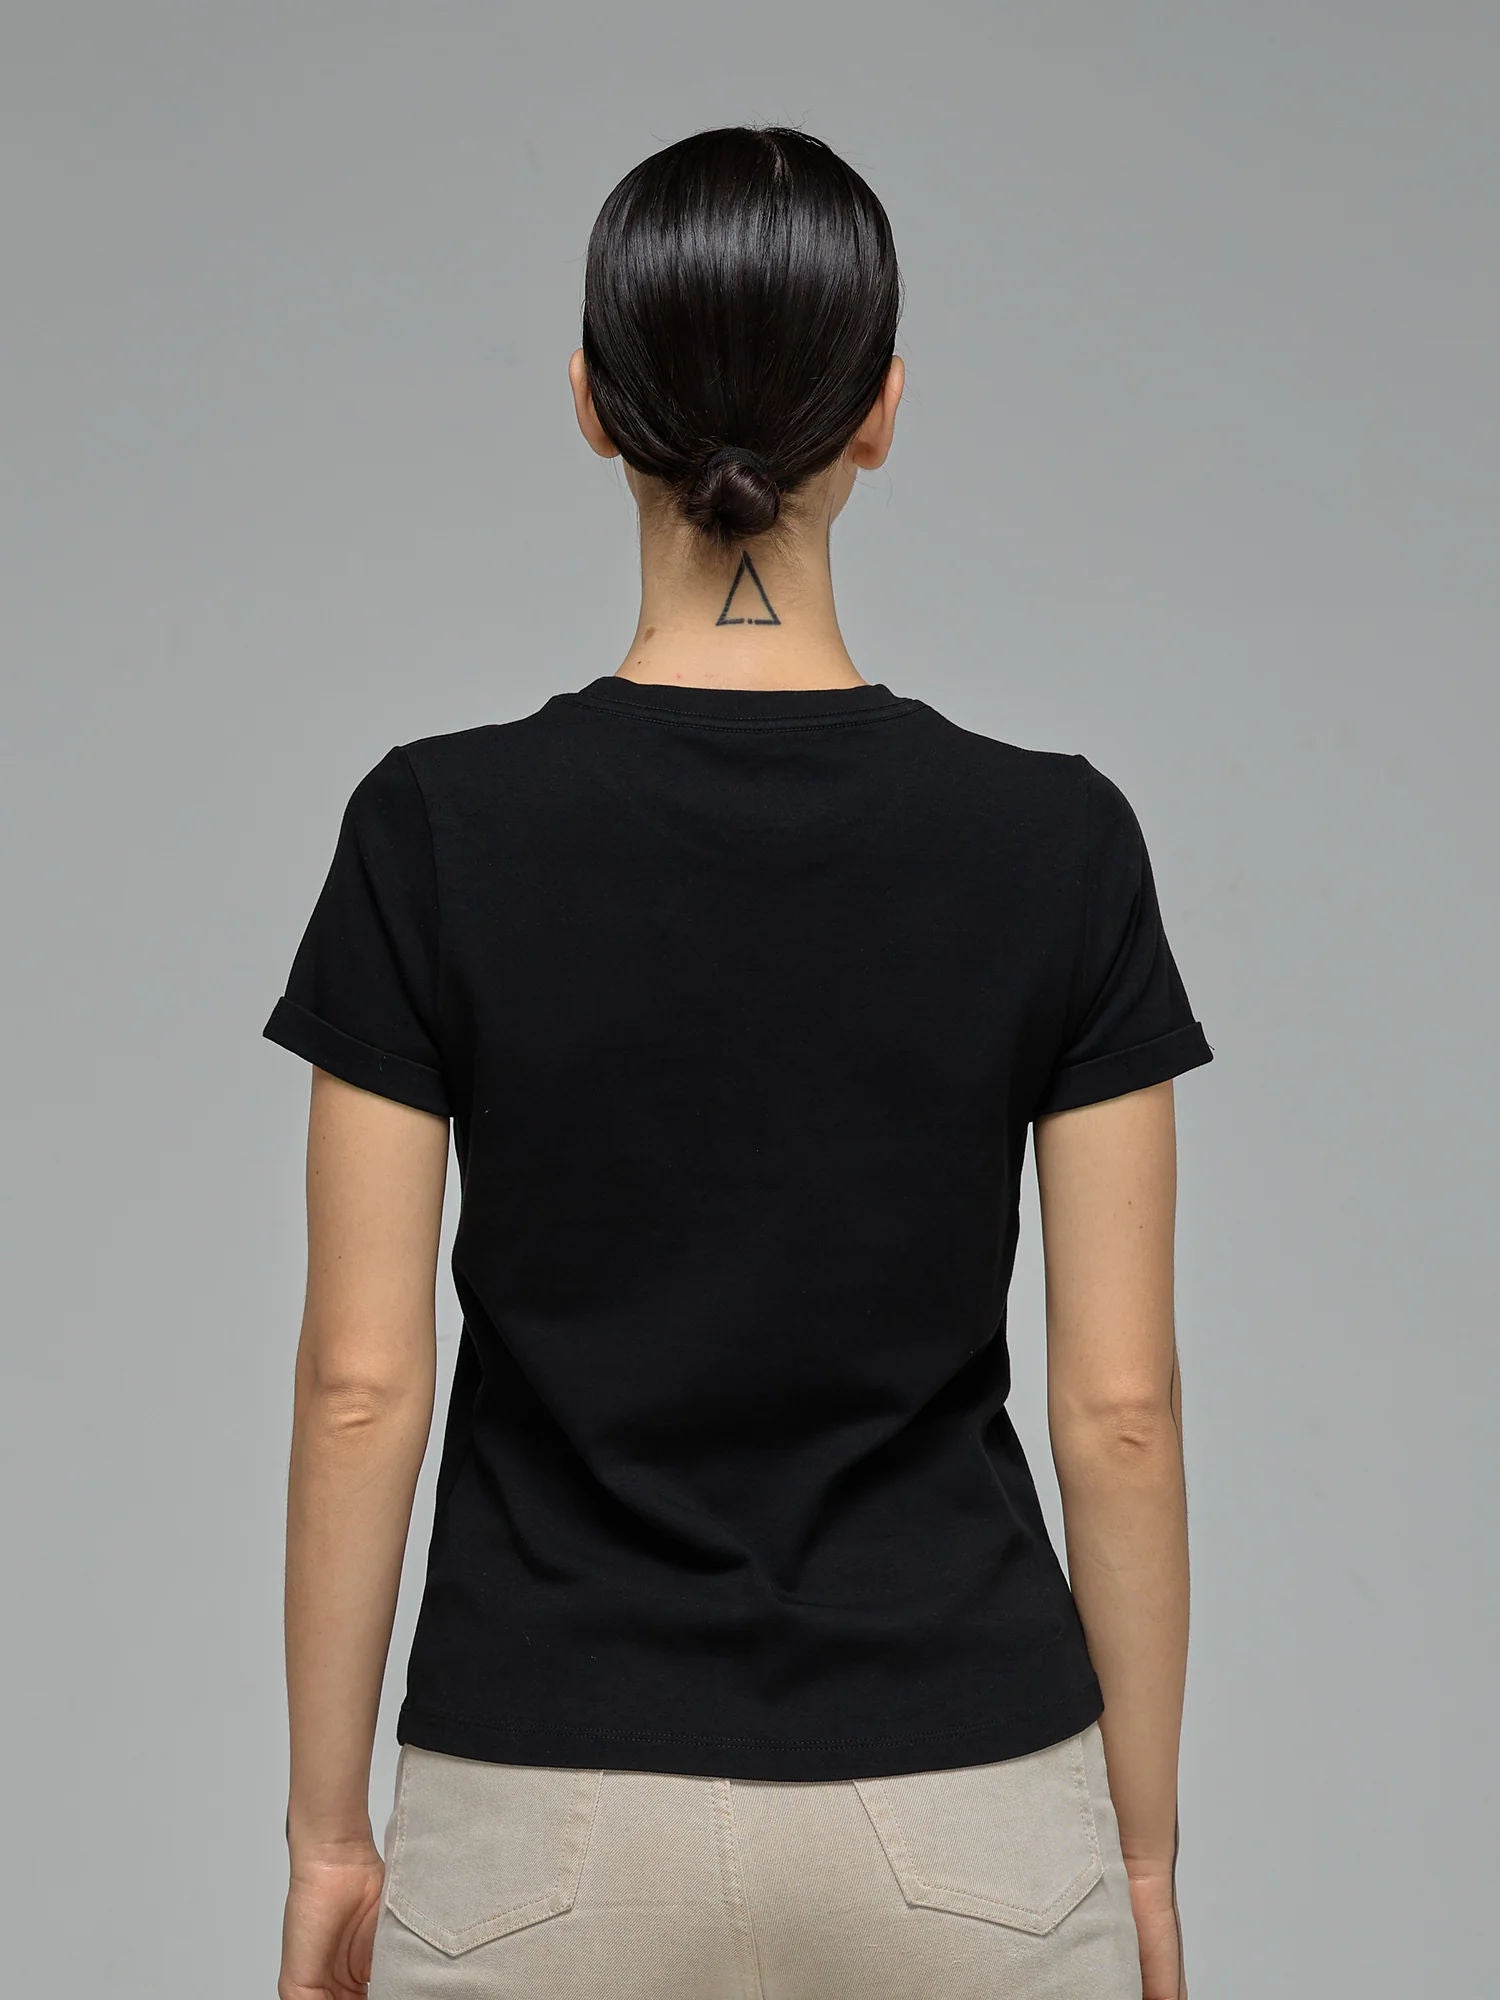 WOMEN'S G-COTTON TEE BLACK Tシャツ | GEARED